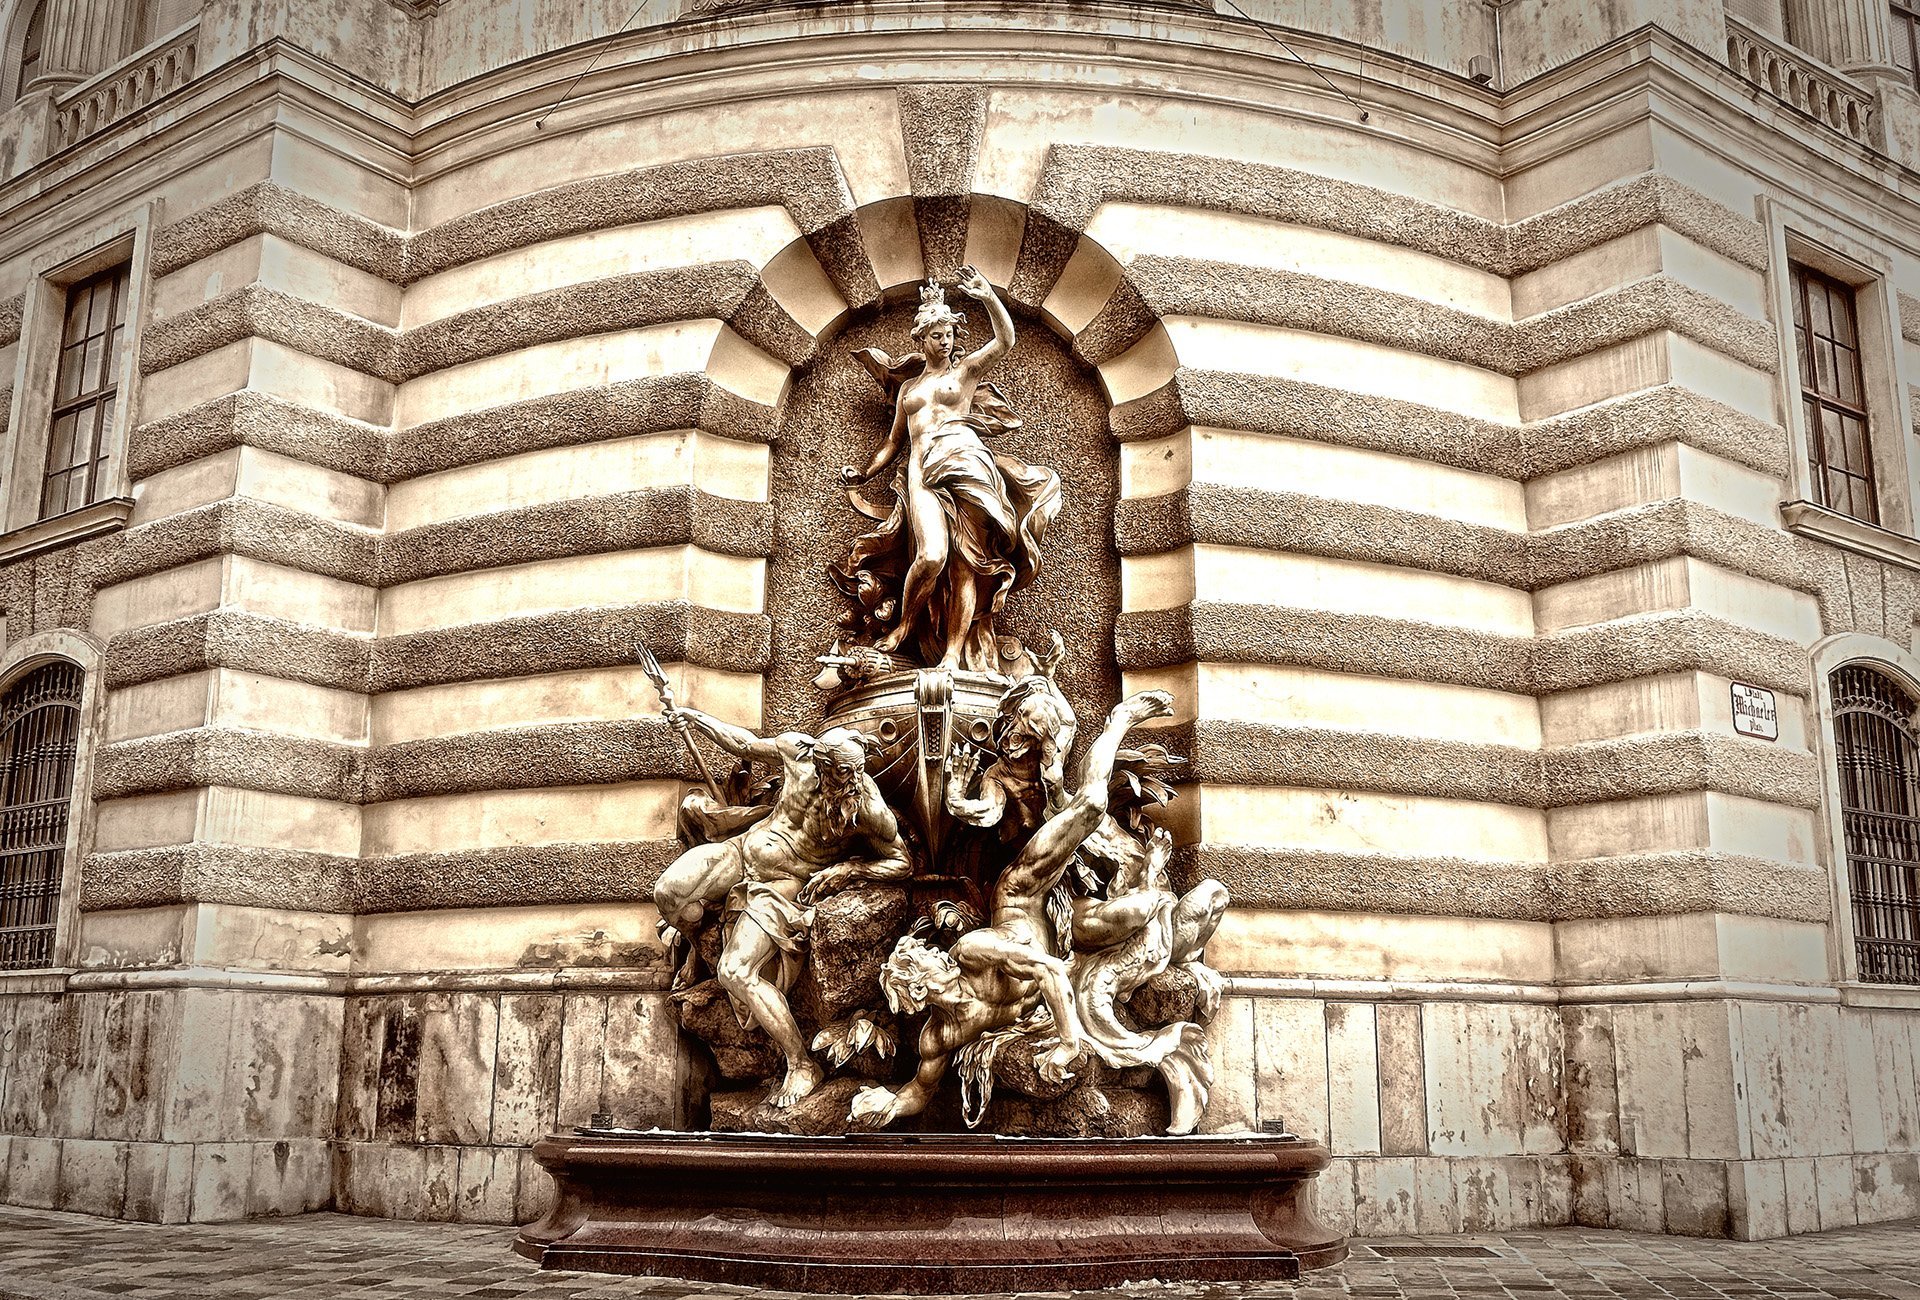 hofburg imparatorluk sarayı heykel